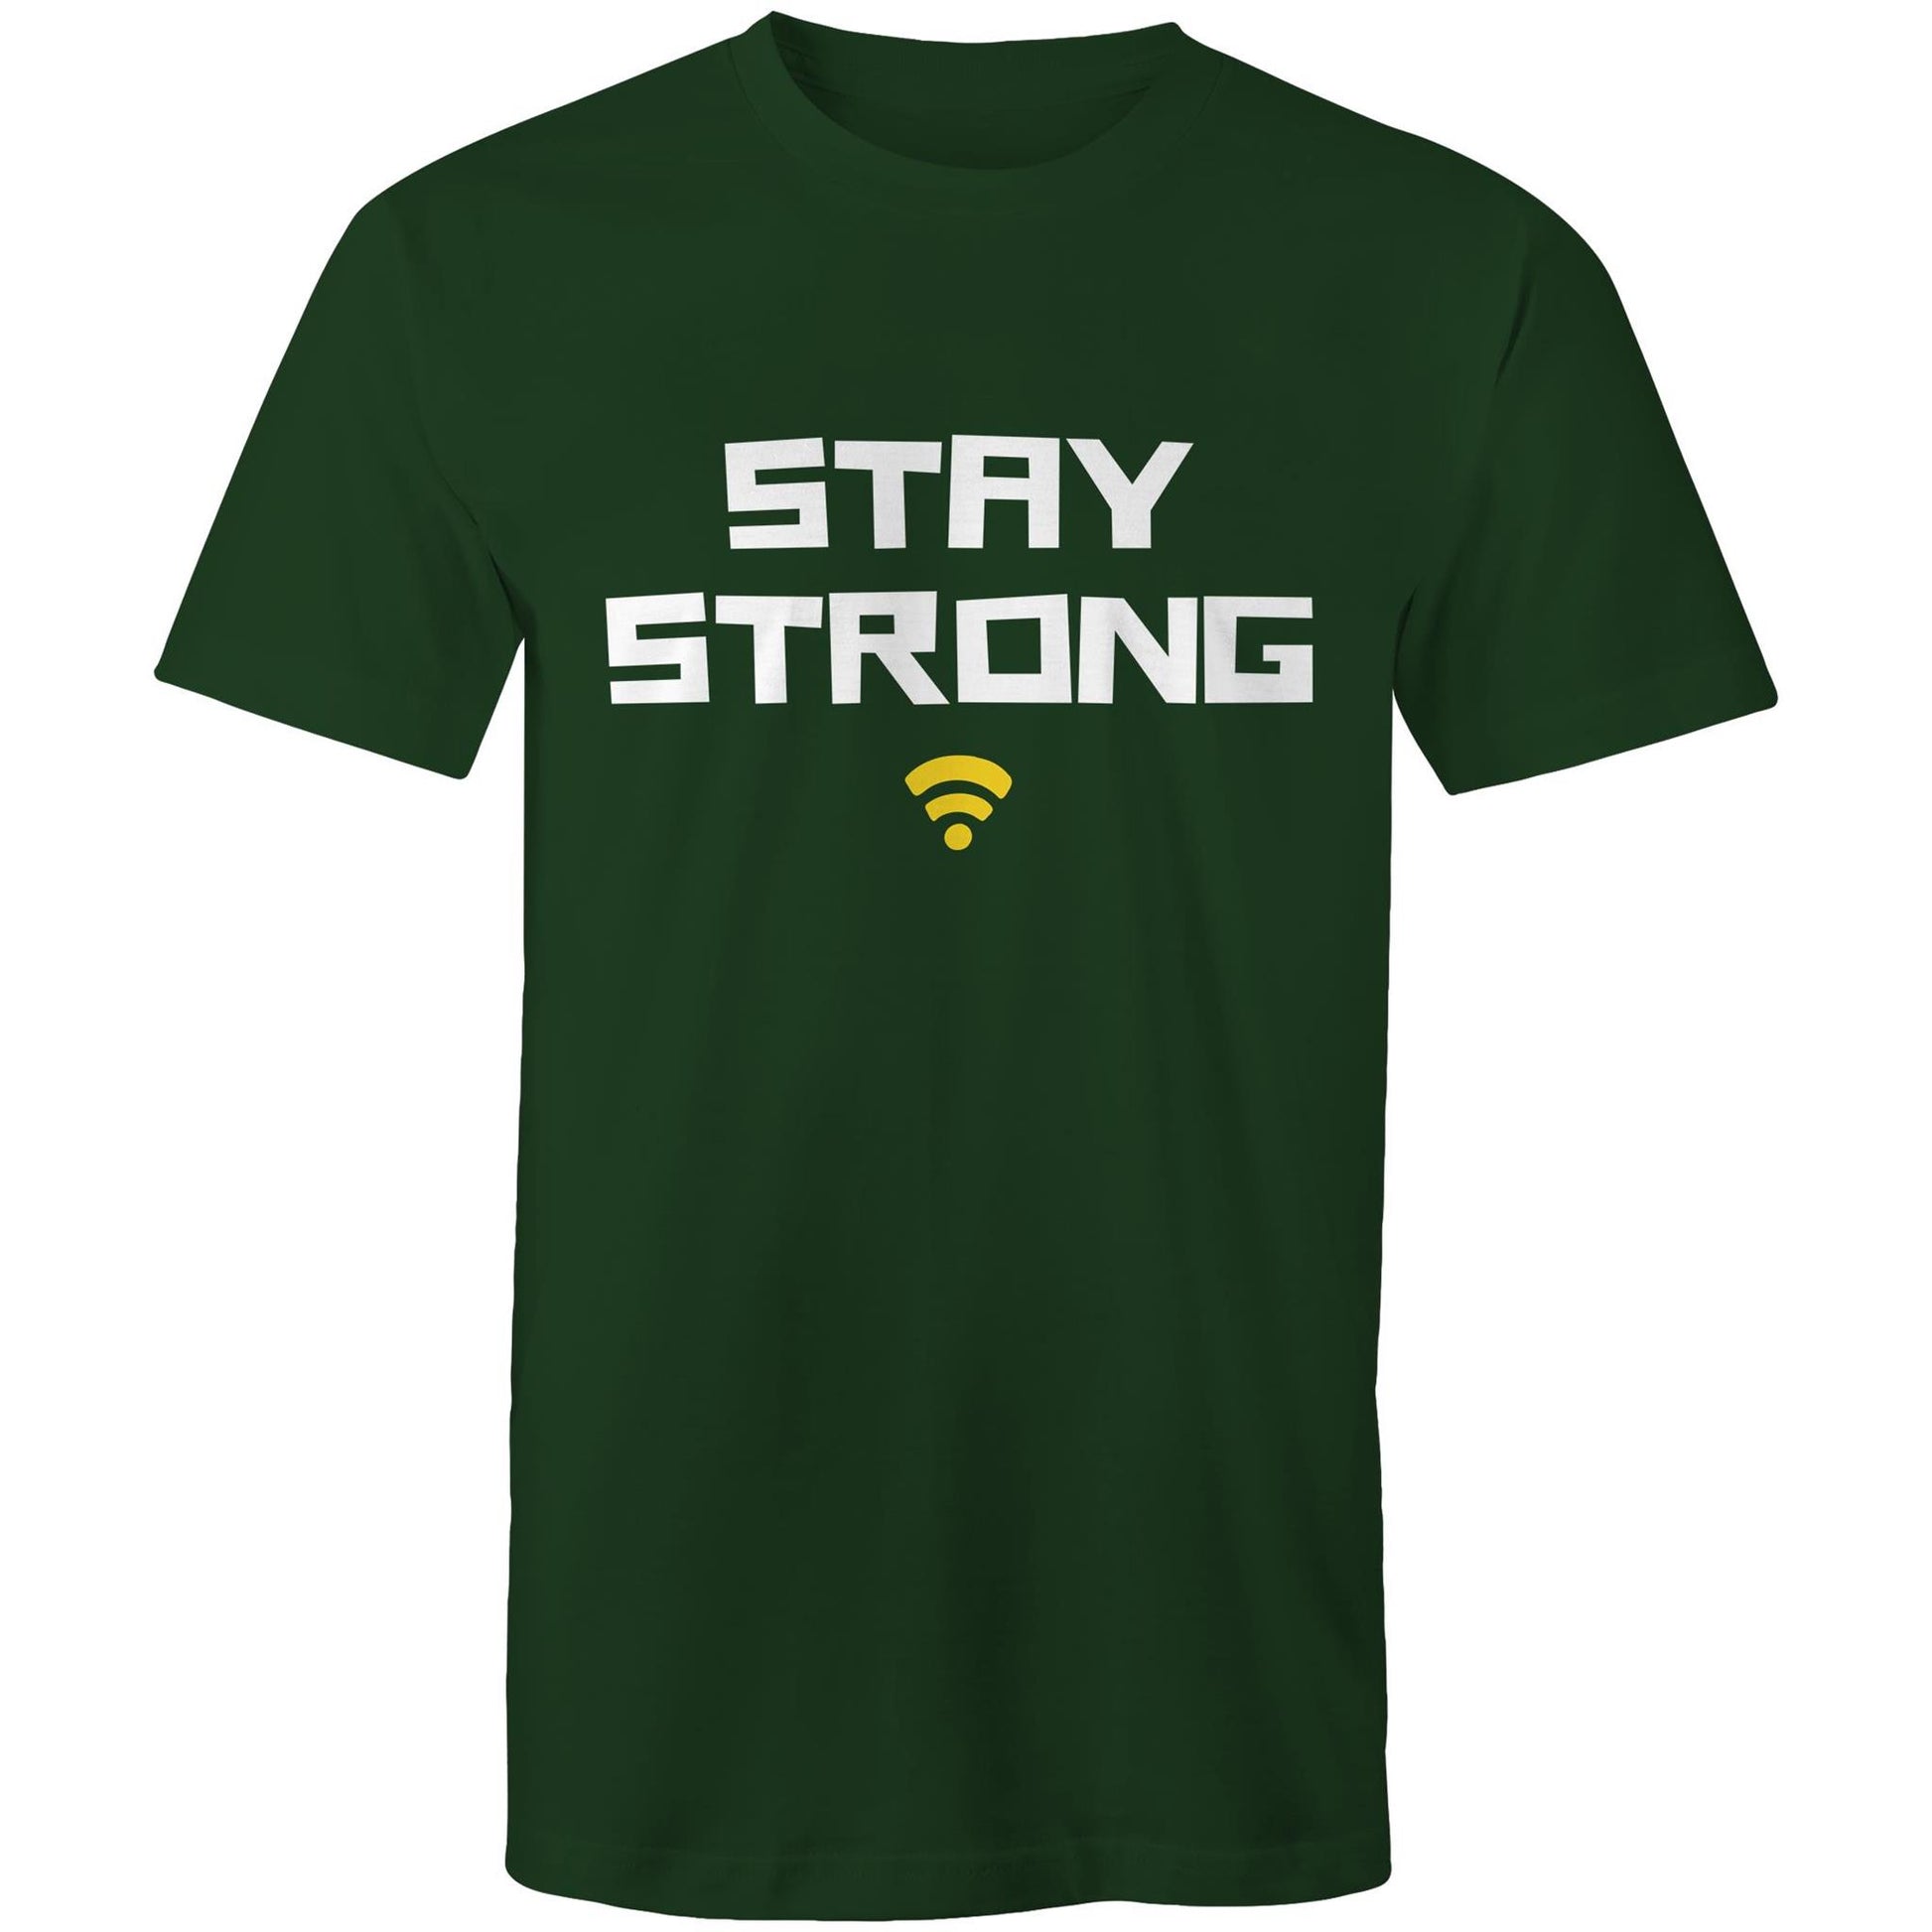 Stay Strong - Mens T-Shirt Forest Green Mens T-shirt Motivation Tech